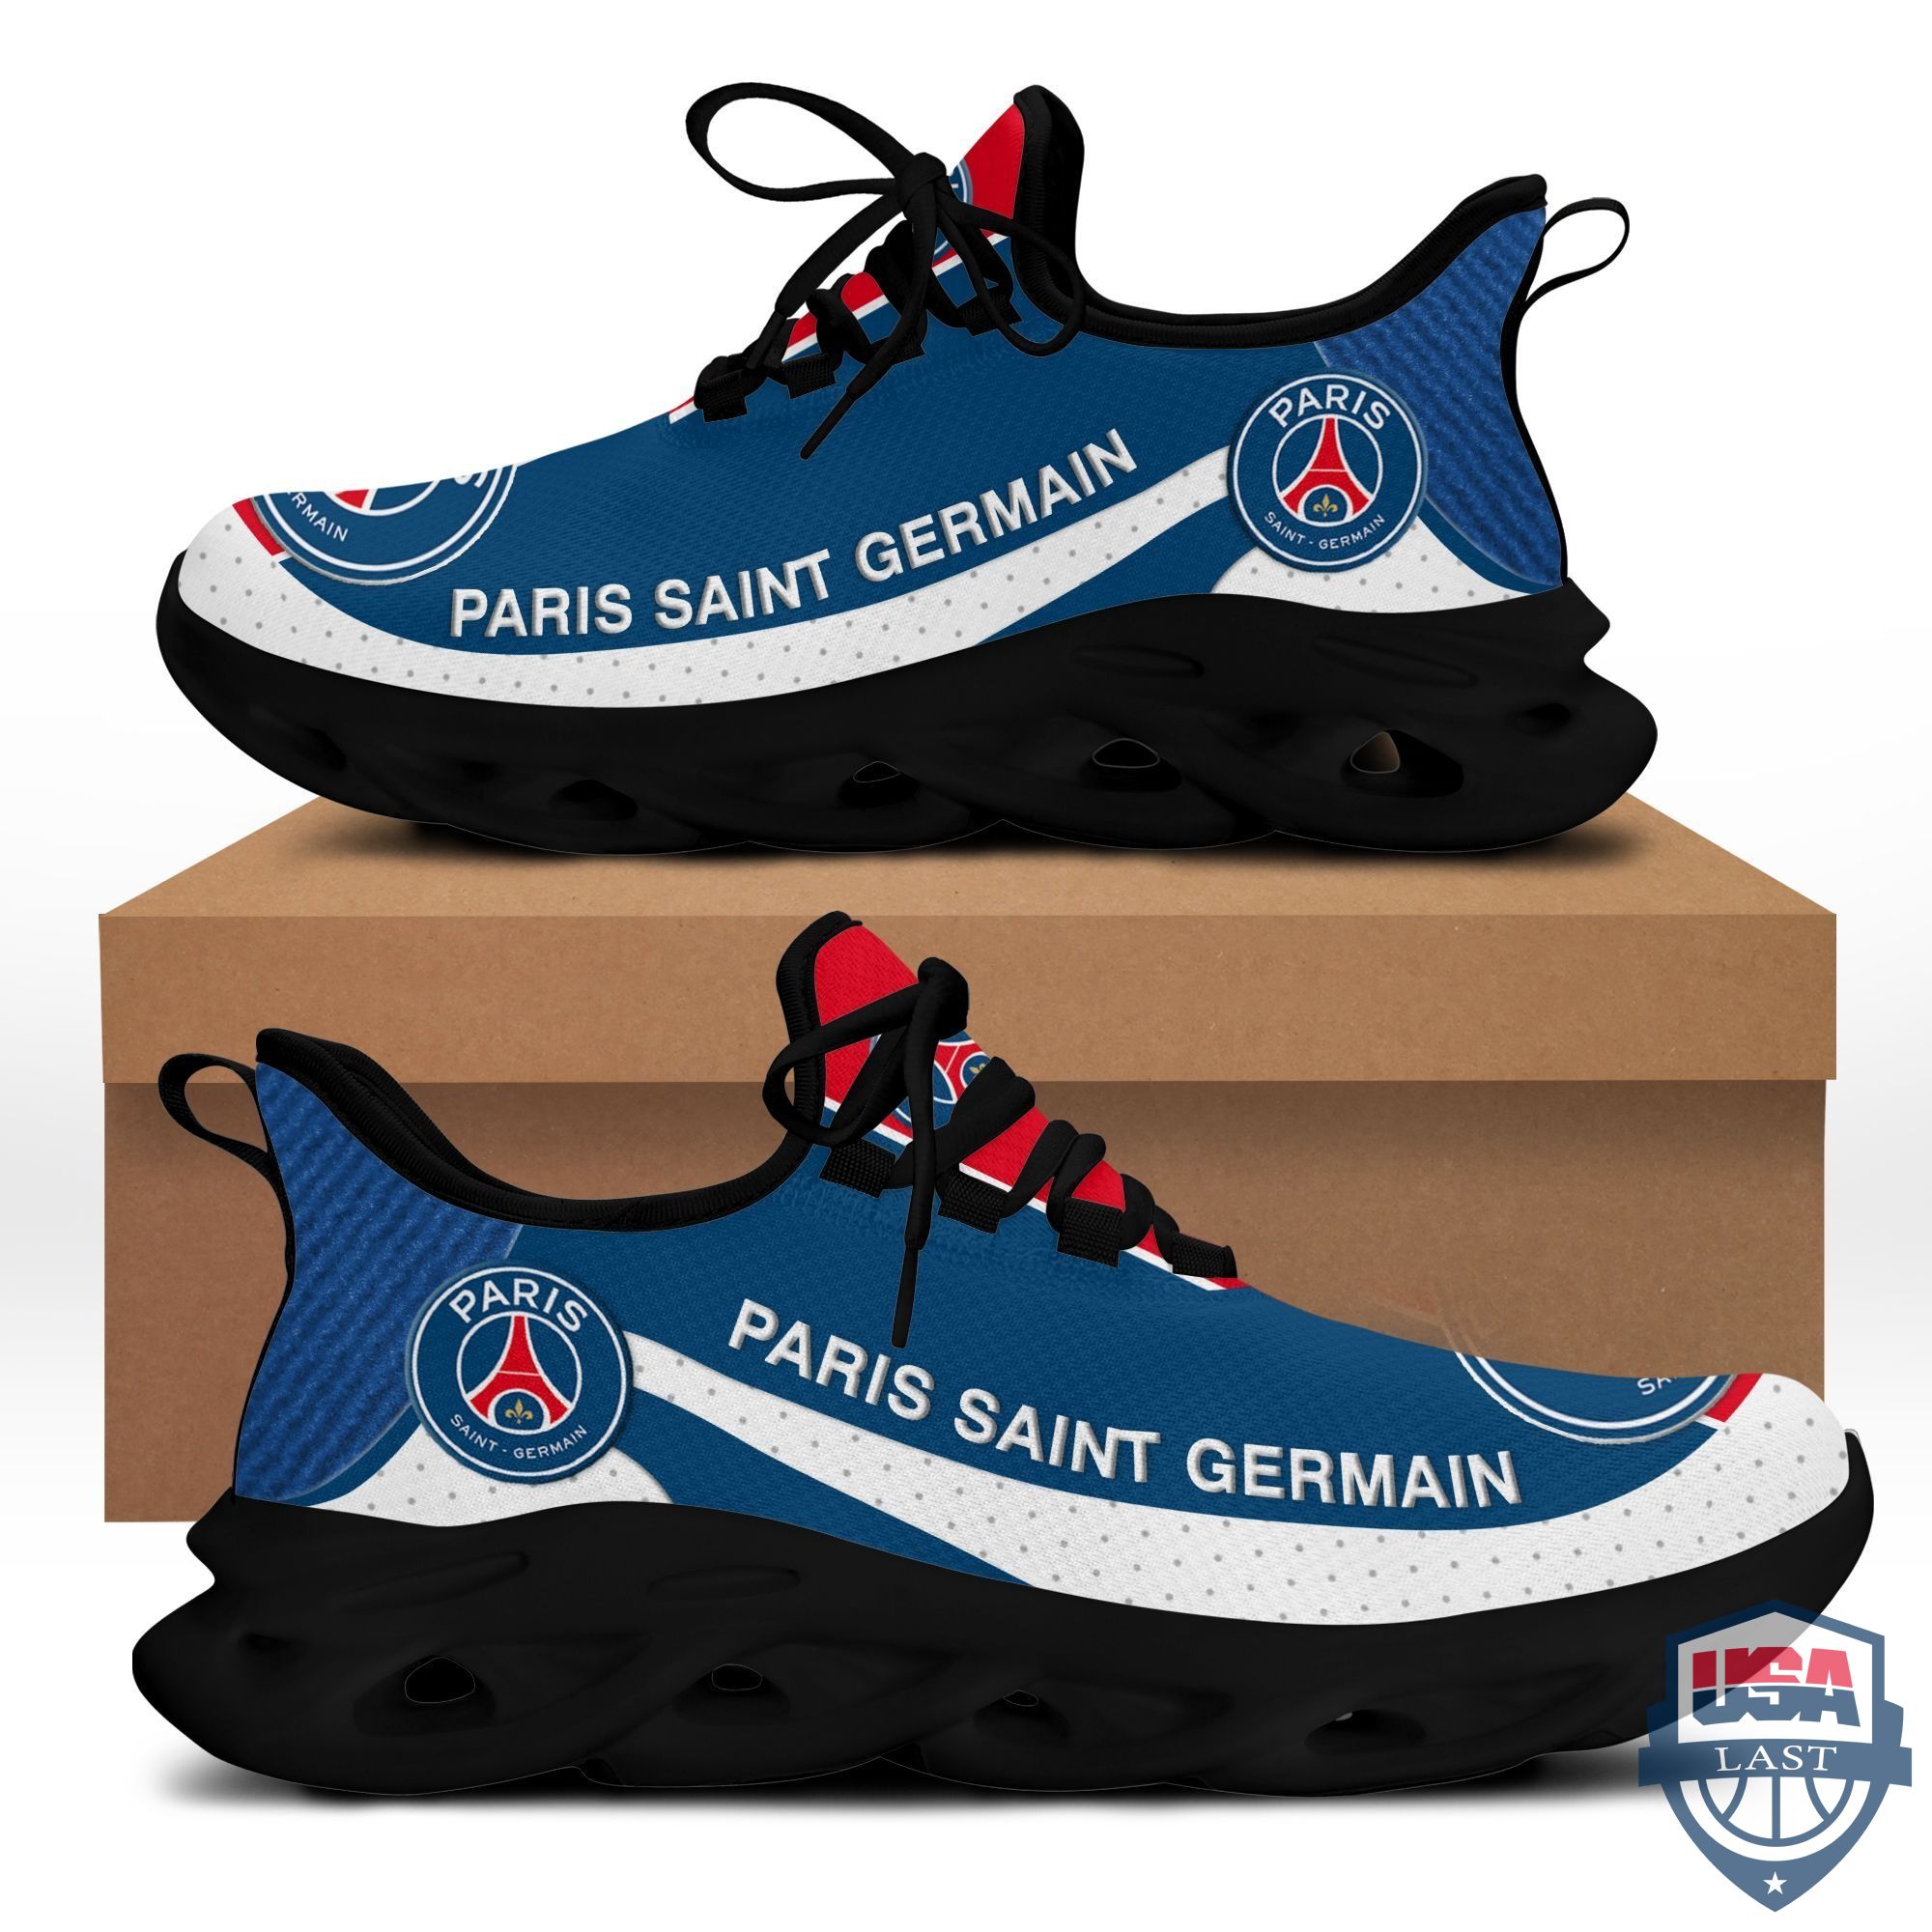 Paris Saint Germain Max Soul Shoes Blue Version For Men, Women